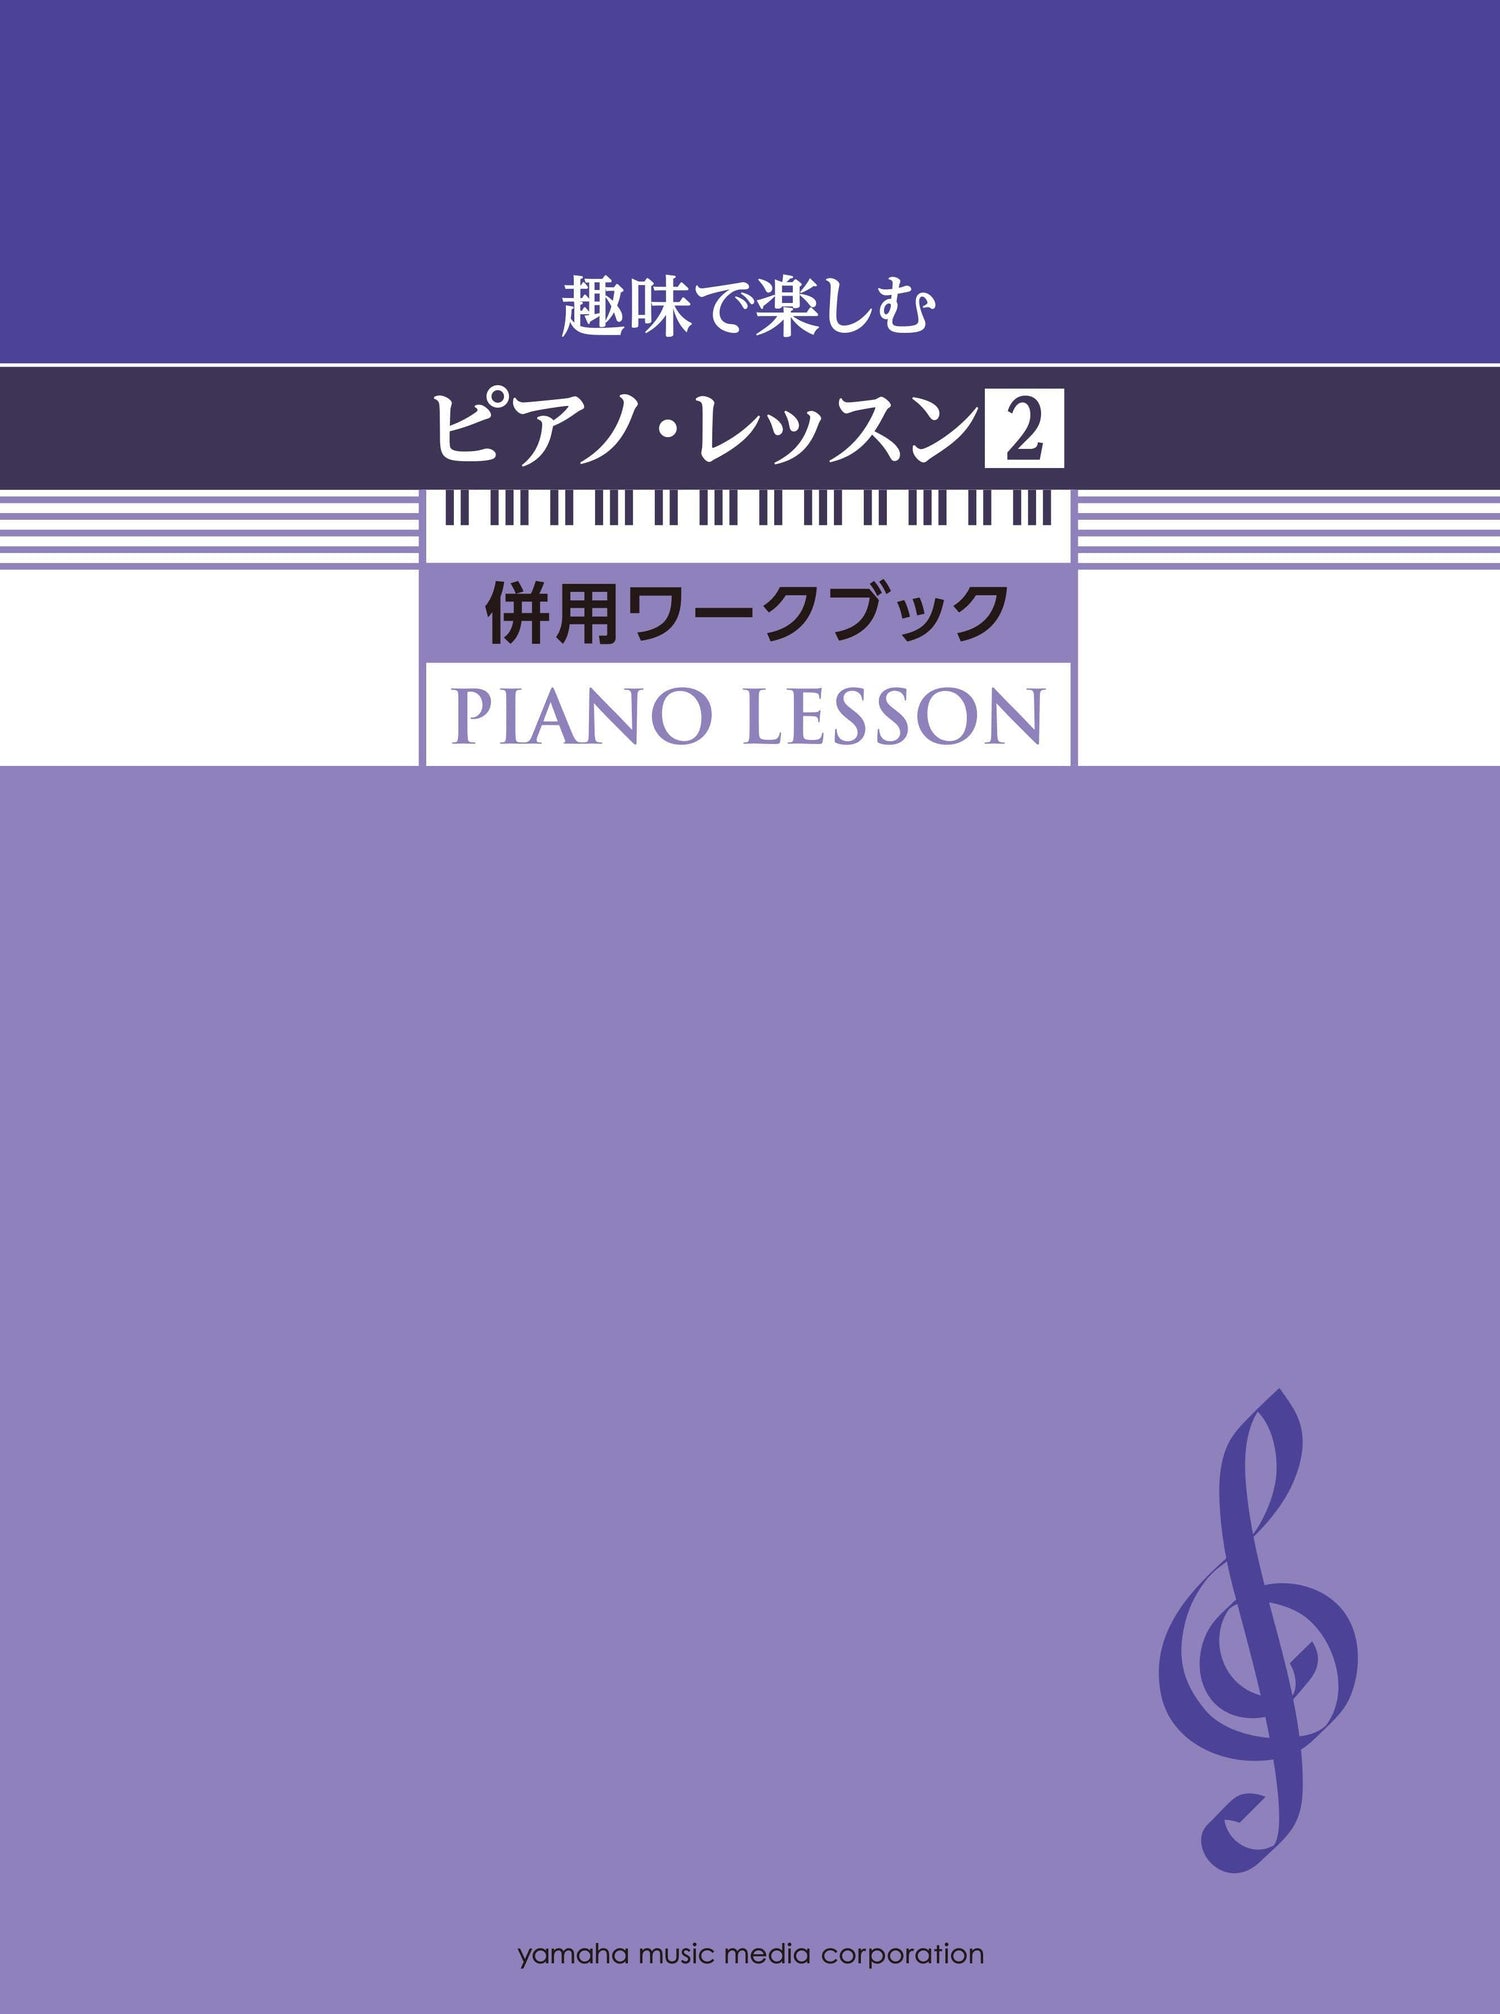 趣味で楽しむピアノ・レッスン2 併用ワークブック